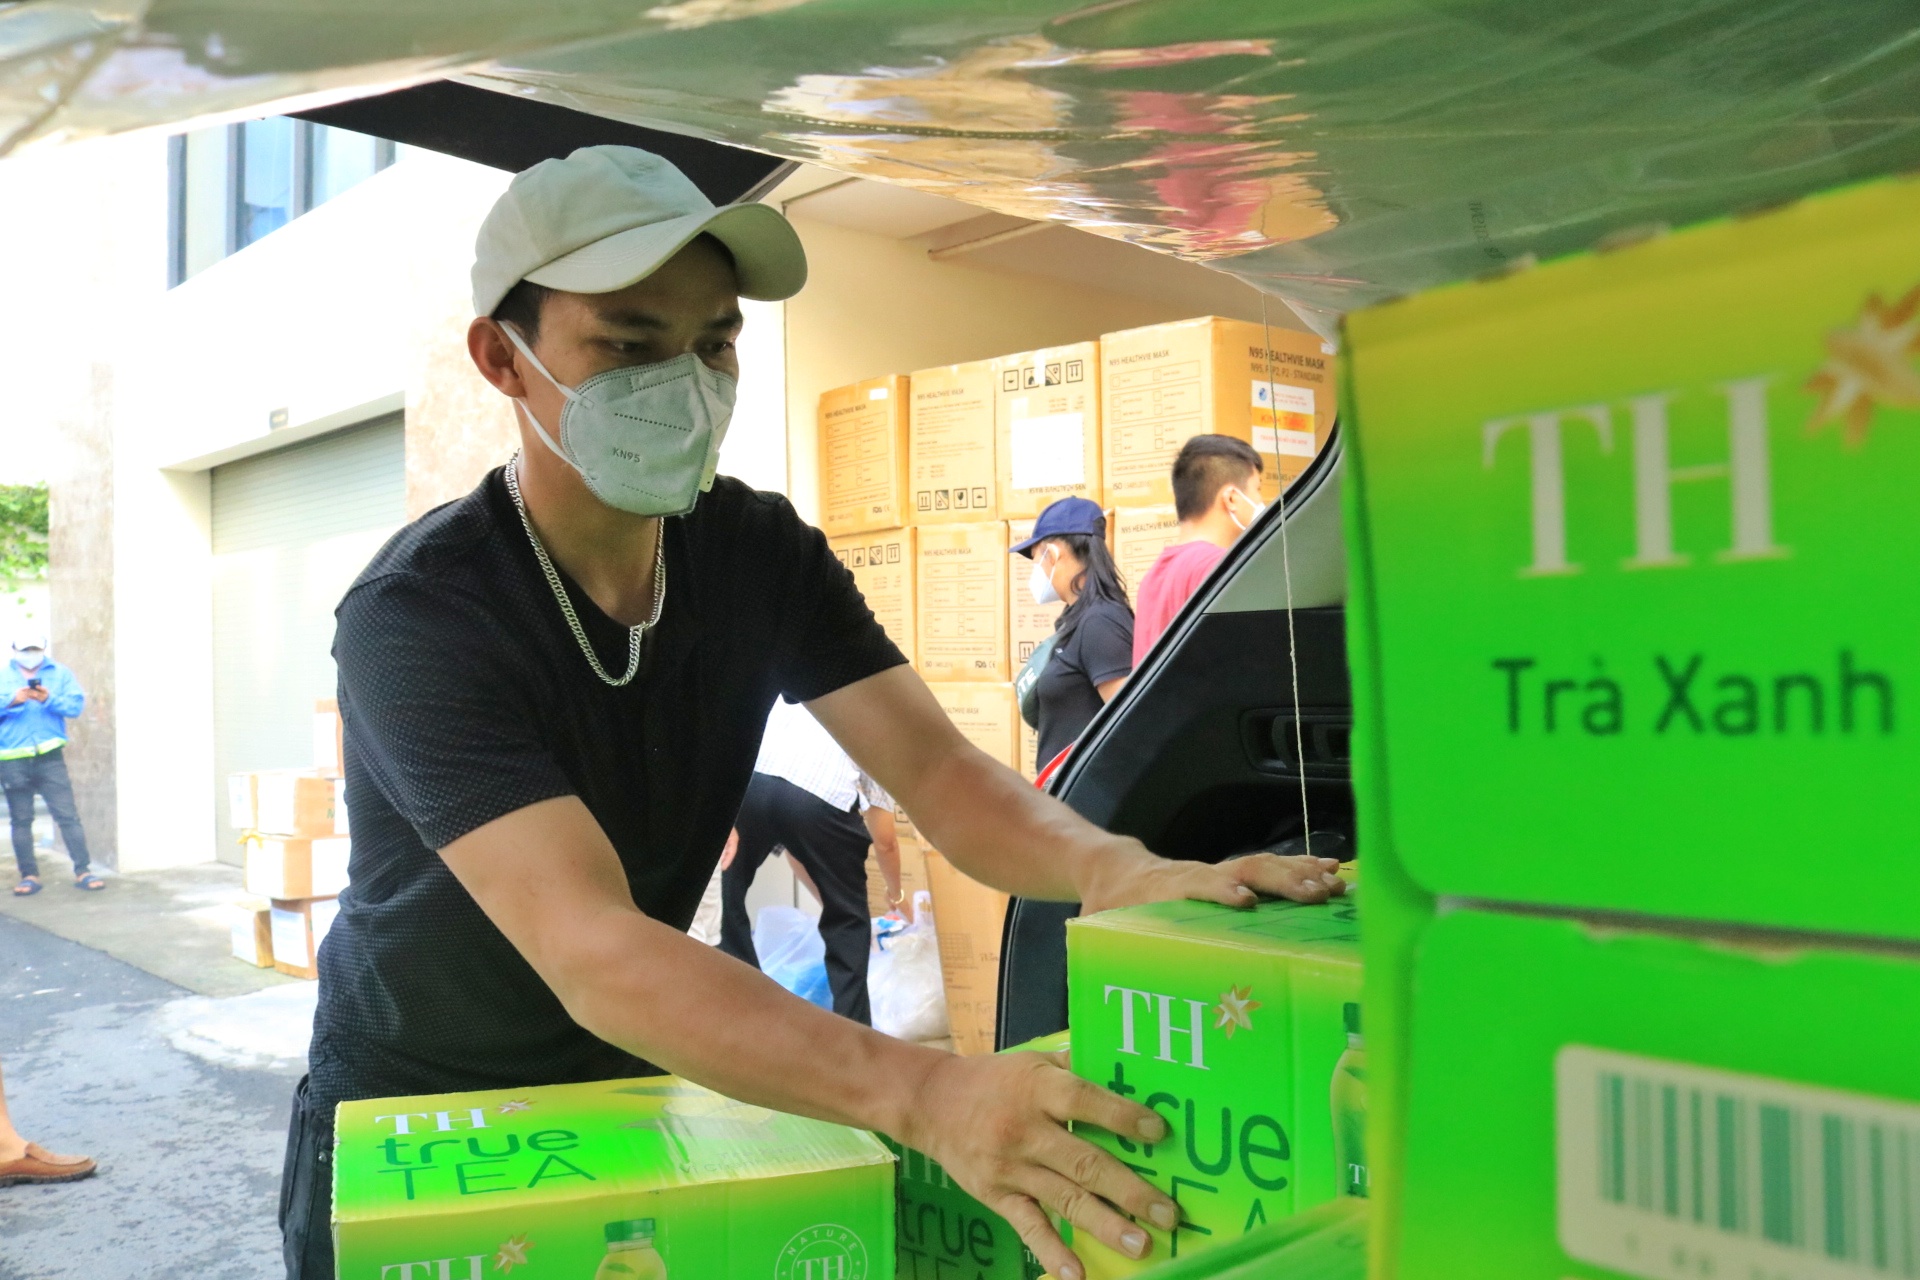 Sáng sớm, anh Hoàng Thế Mạnh (23 tuổi, TP.Thủ Đức) cùng hơn 10 tình nguyện viên tất bật vận chuyển hàng hóa lên xe để chở đến hơn 30 bệnh viện tuyến đầu ở các quận, huyện TP.HCM